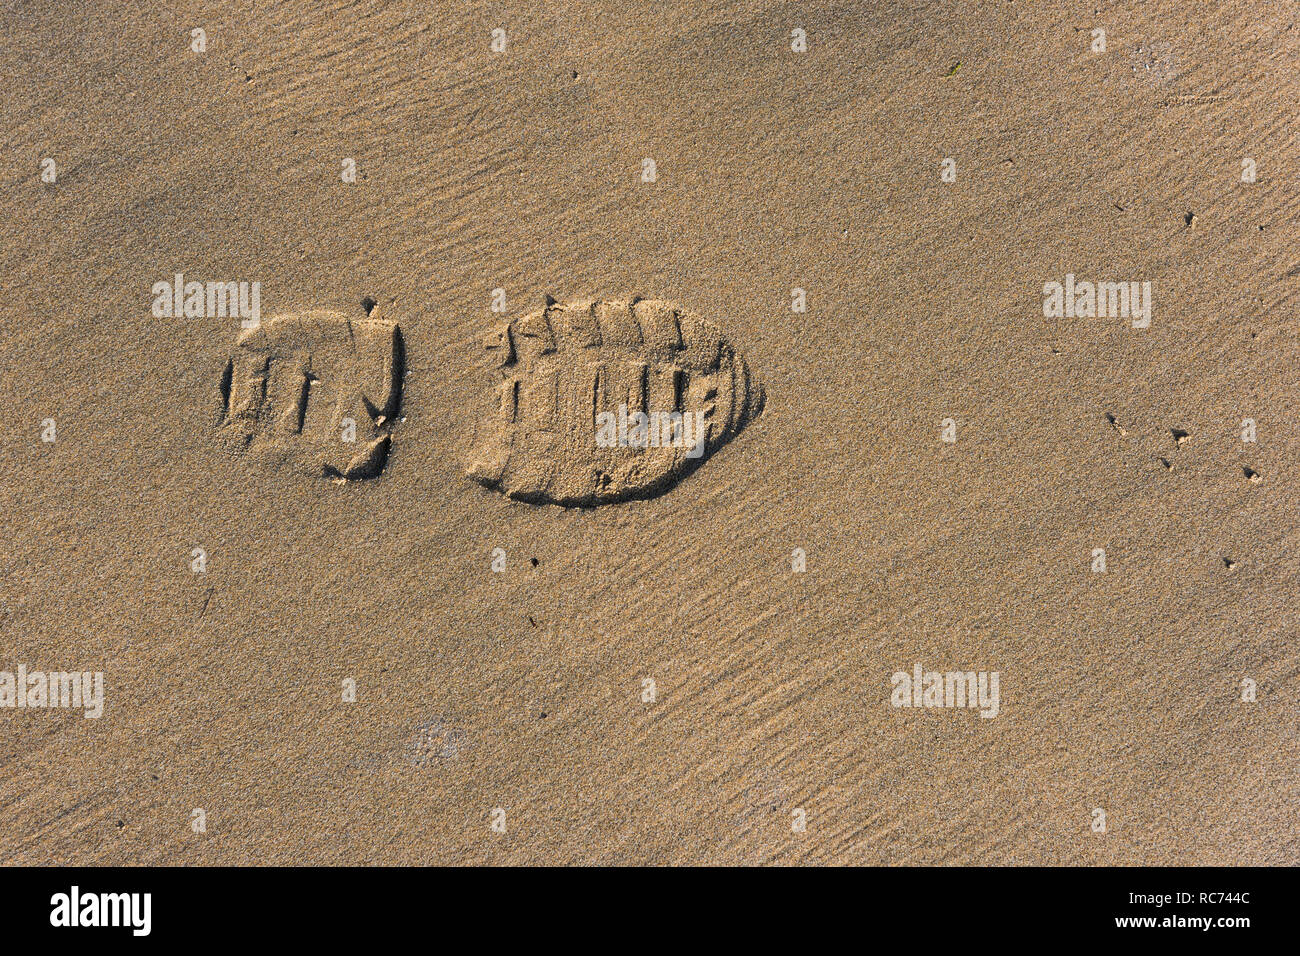 Un singolo shoeprint in sabbia bagnata su una spiaggia. Foto Stock